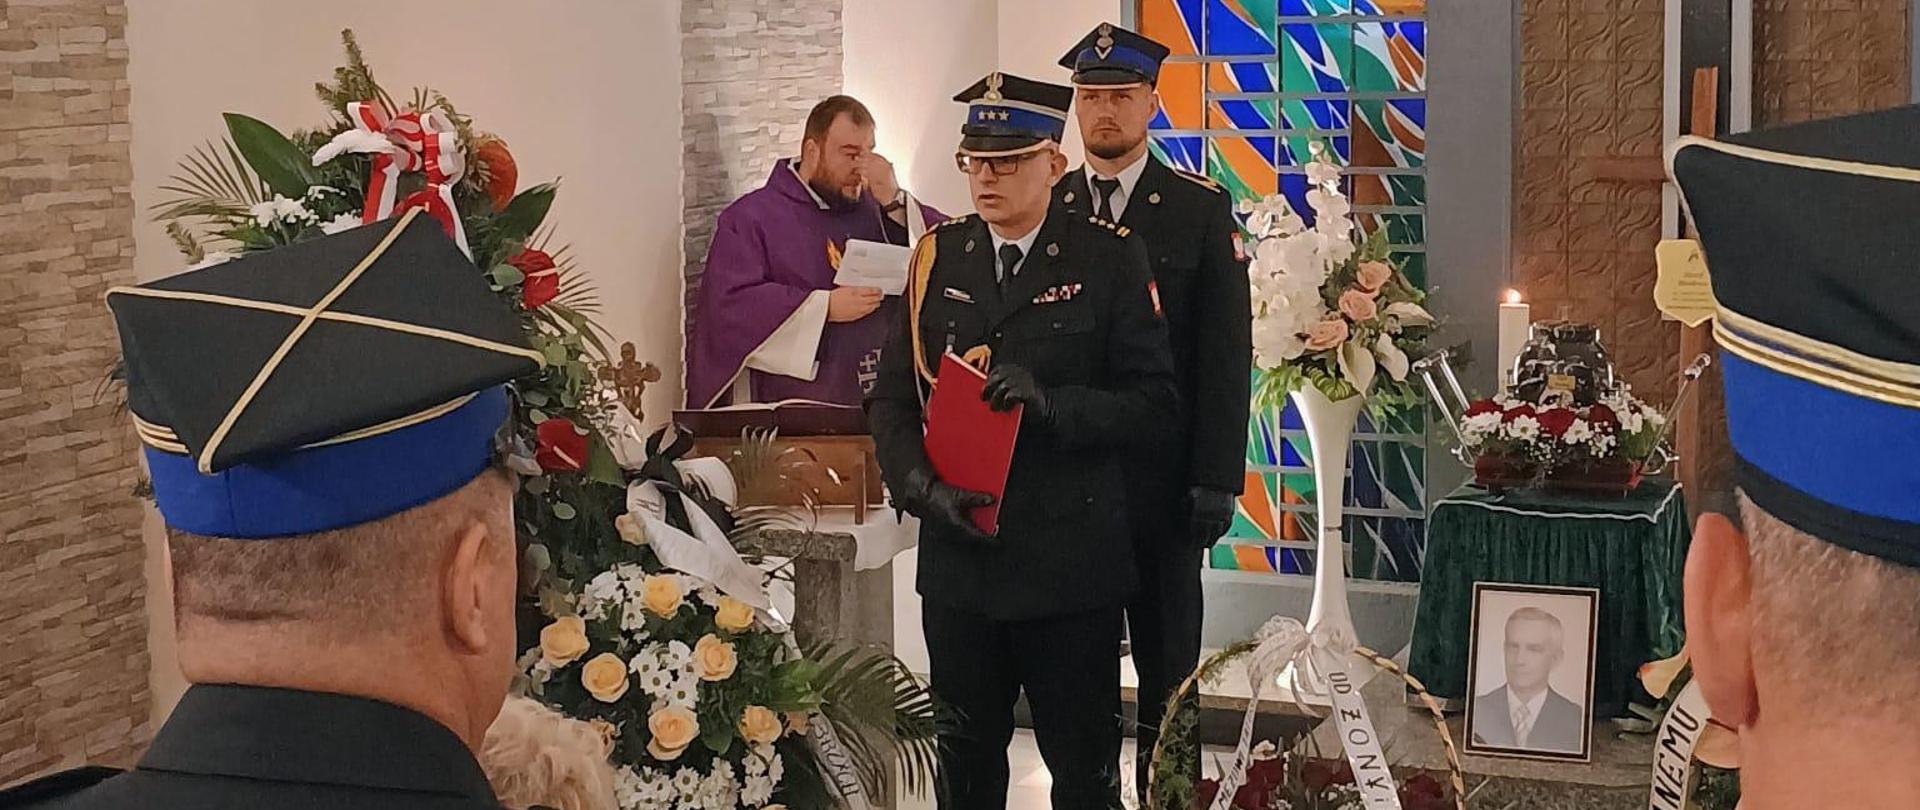 Zastępca komendanta głównego PSP przemawia do osób zgromadzonych na ceremonii pogrzbowej. Widoczna na katafalku urna z prochami zmarłego oraz jego zdjęcie.